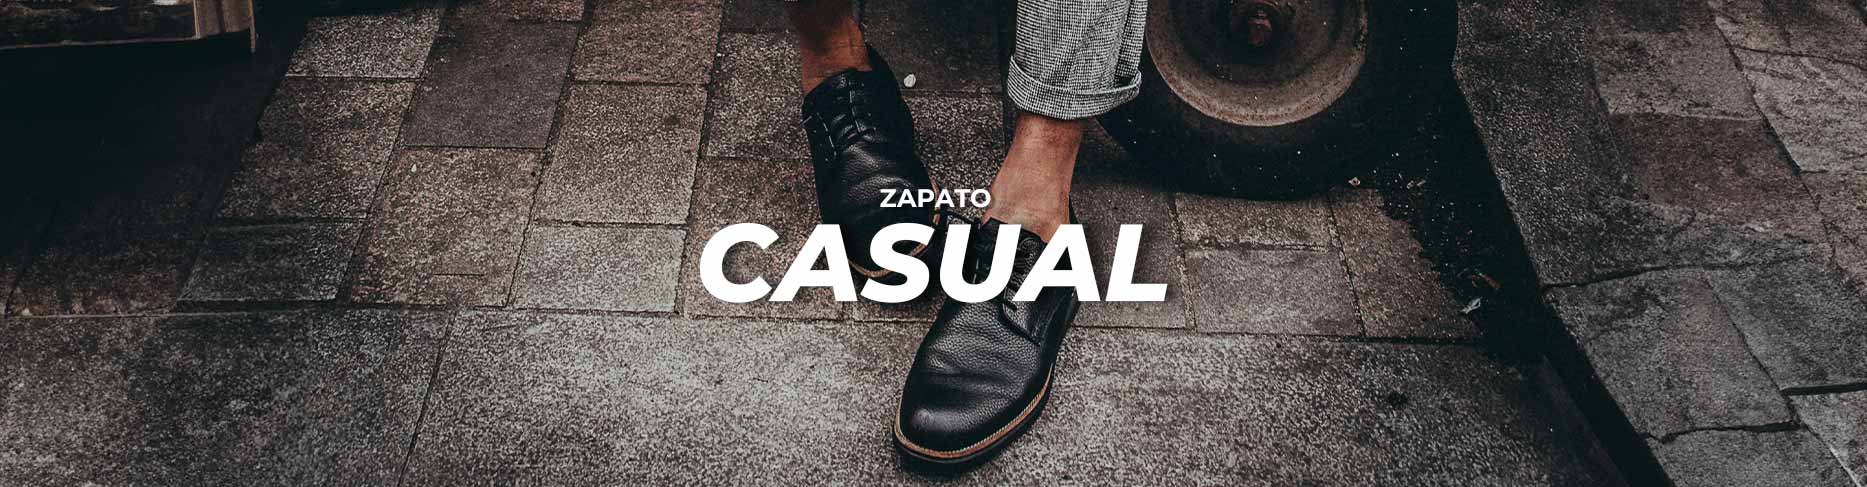 ZAPATO CASUAL CABALLERO